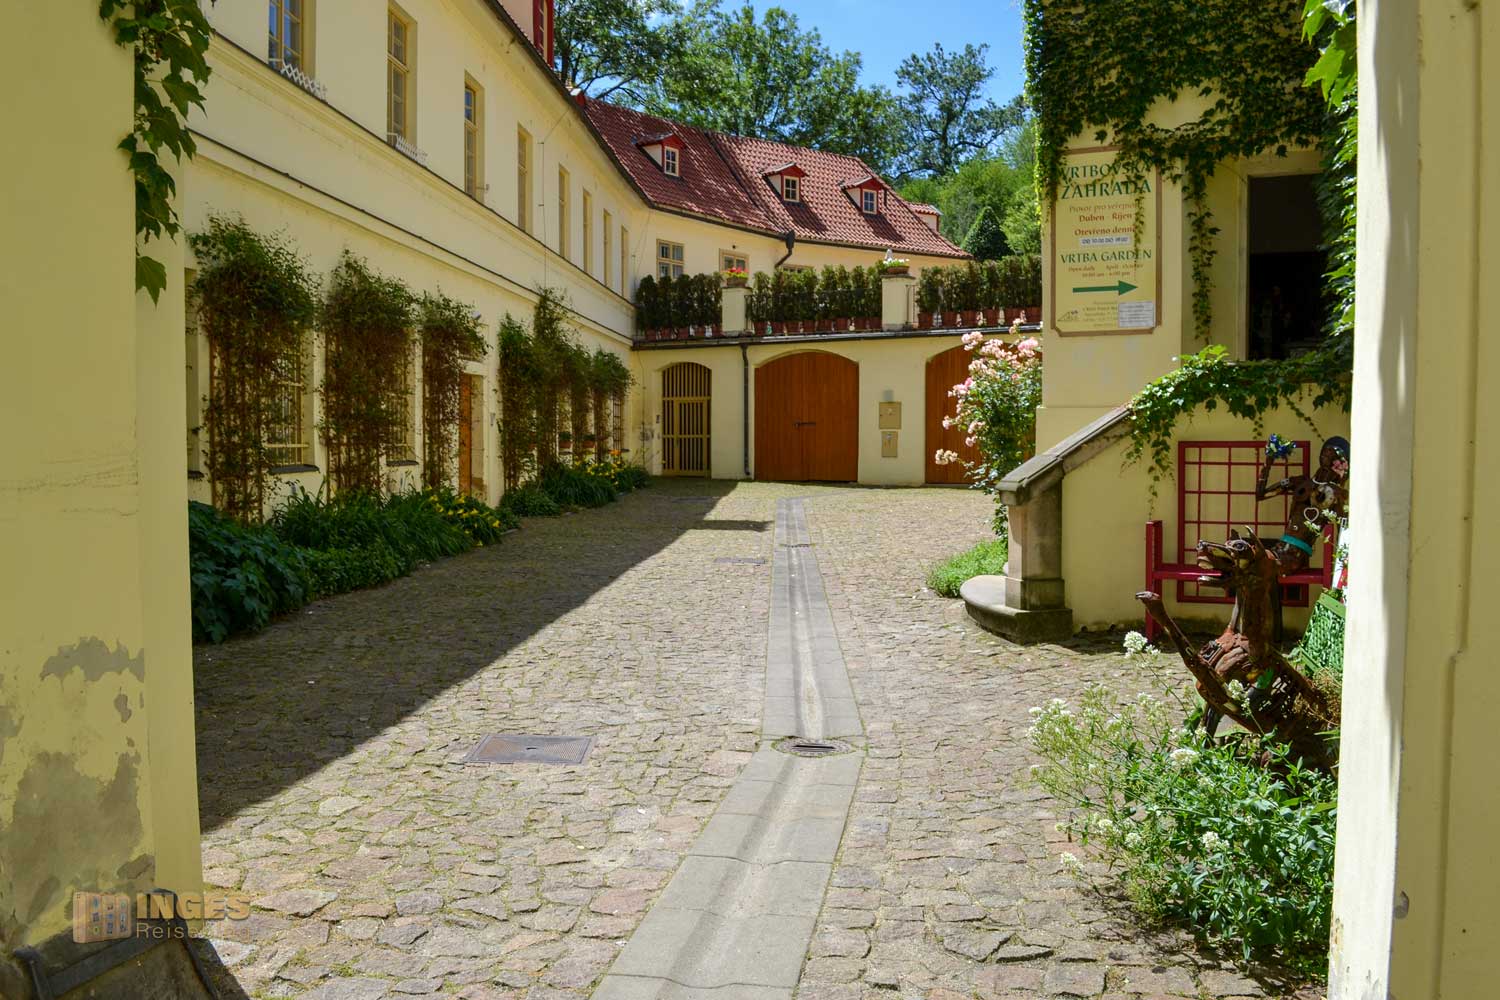 Vrtba-Garten (Vrtbovská zahrada) auf der Prager Kleinseite